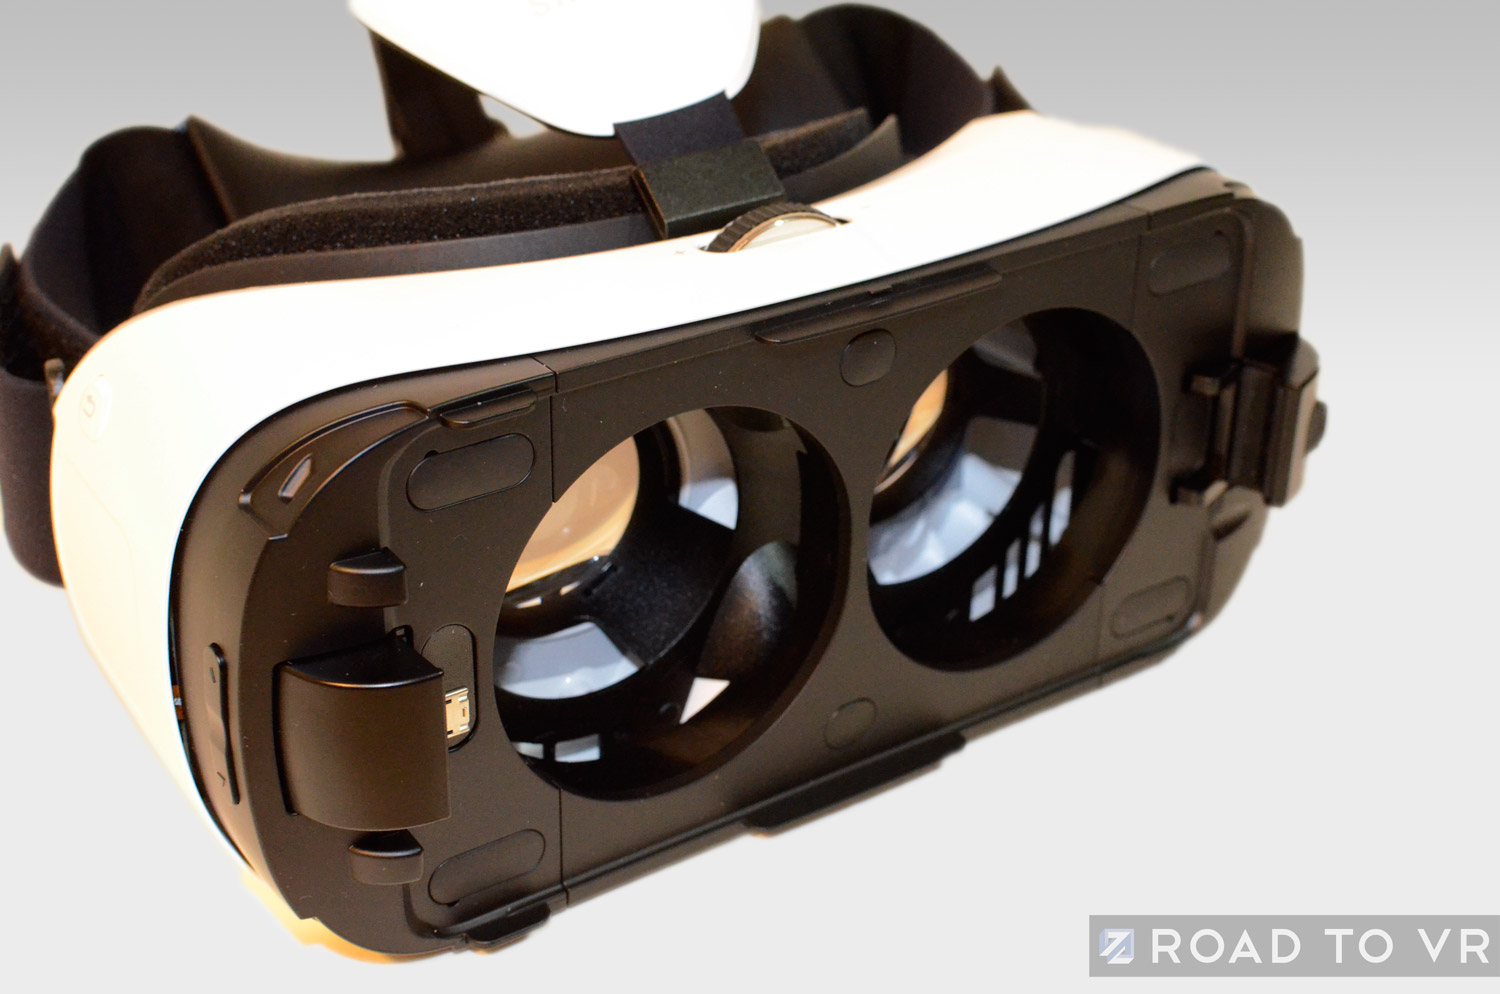 Gear VR Review, Part 1: Design to Oculus Rift DK2